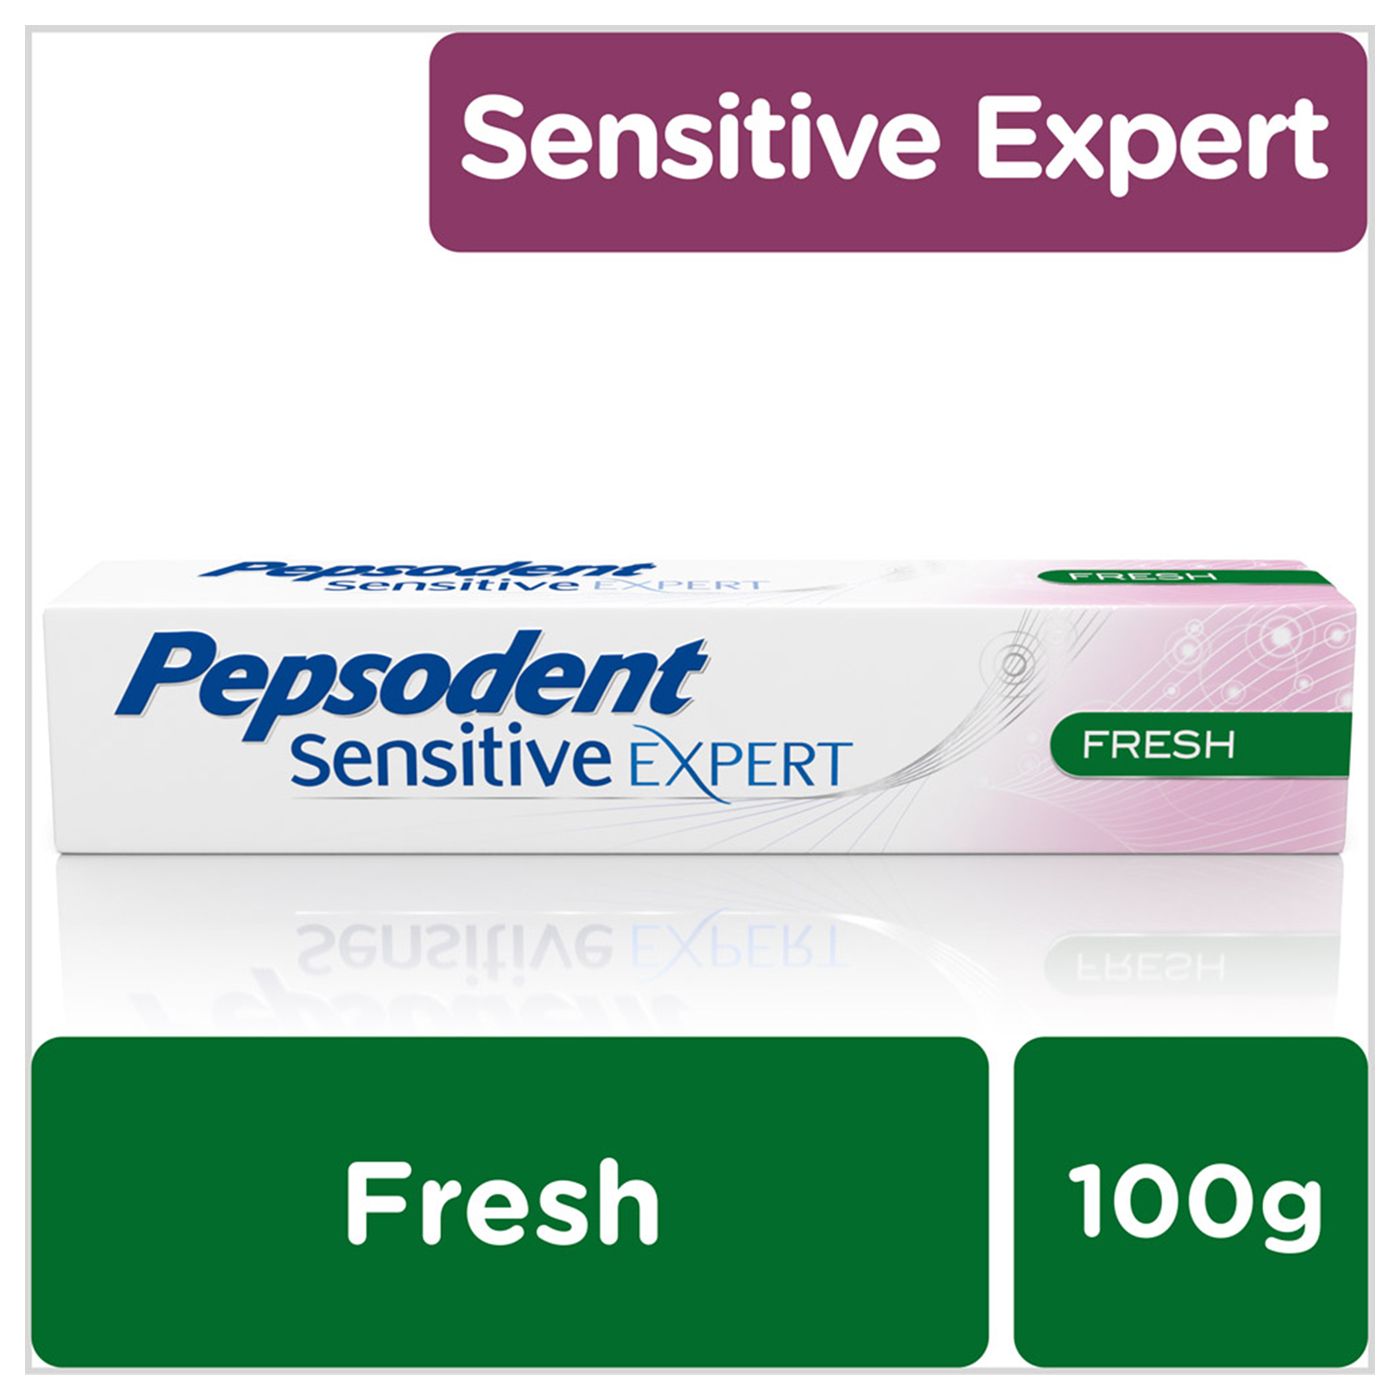 Pepsodent Sensitive Expert PAsta gigi Fresh 100g - 2